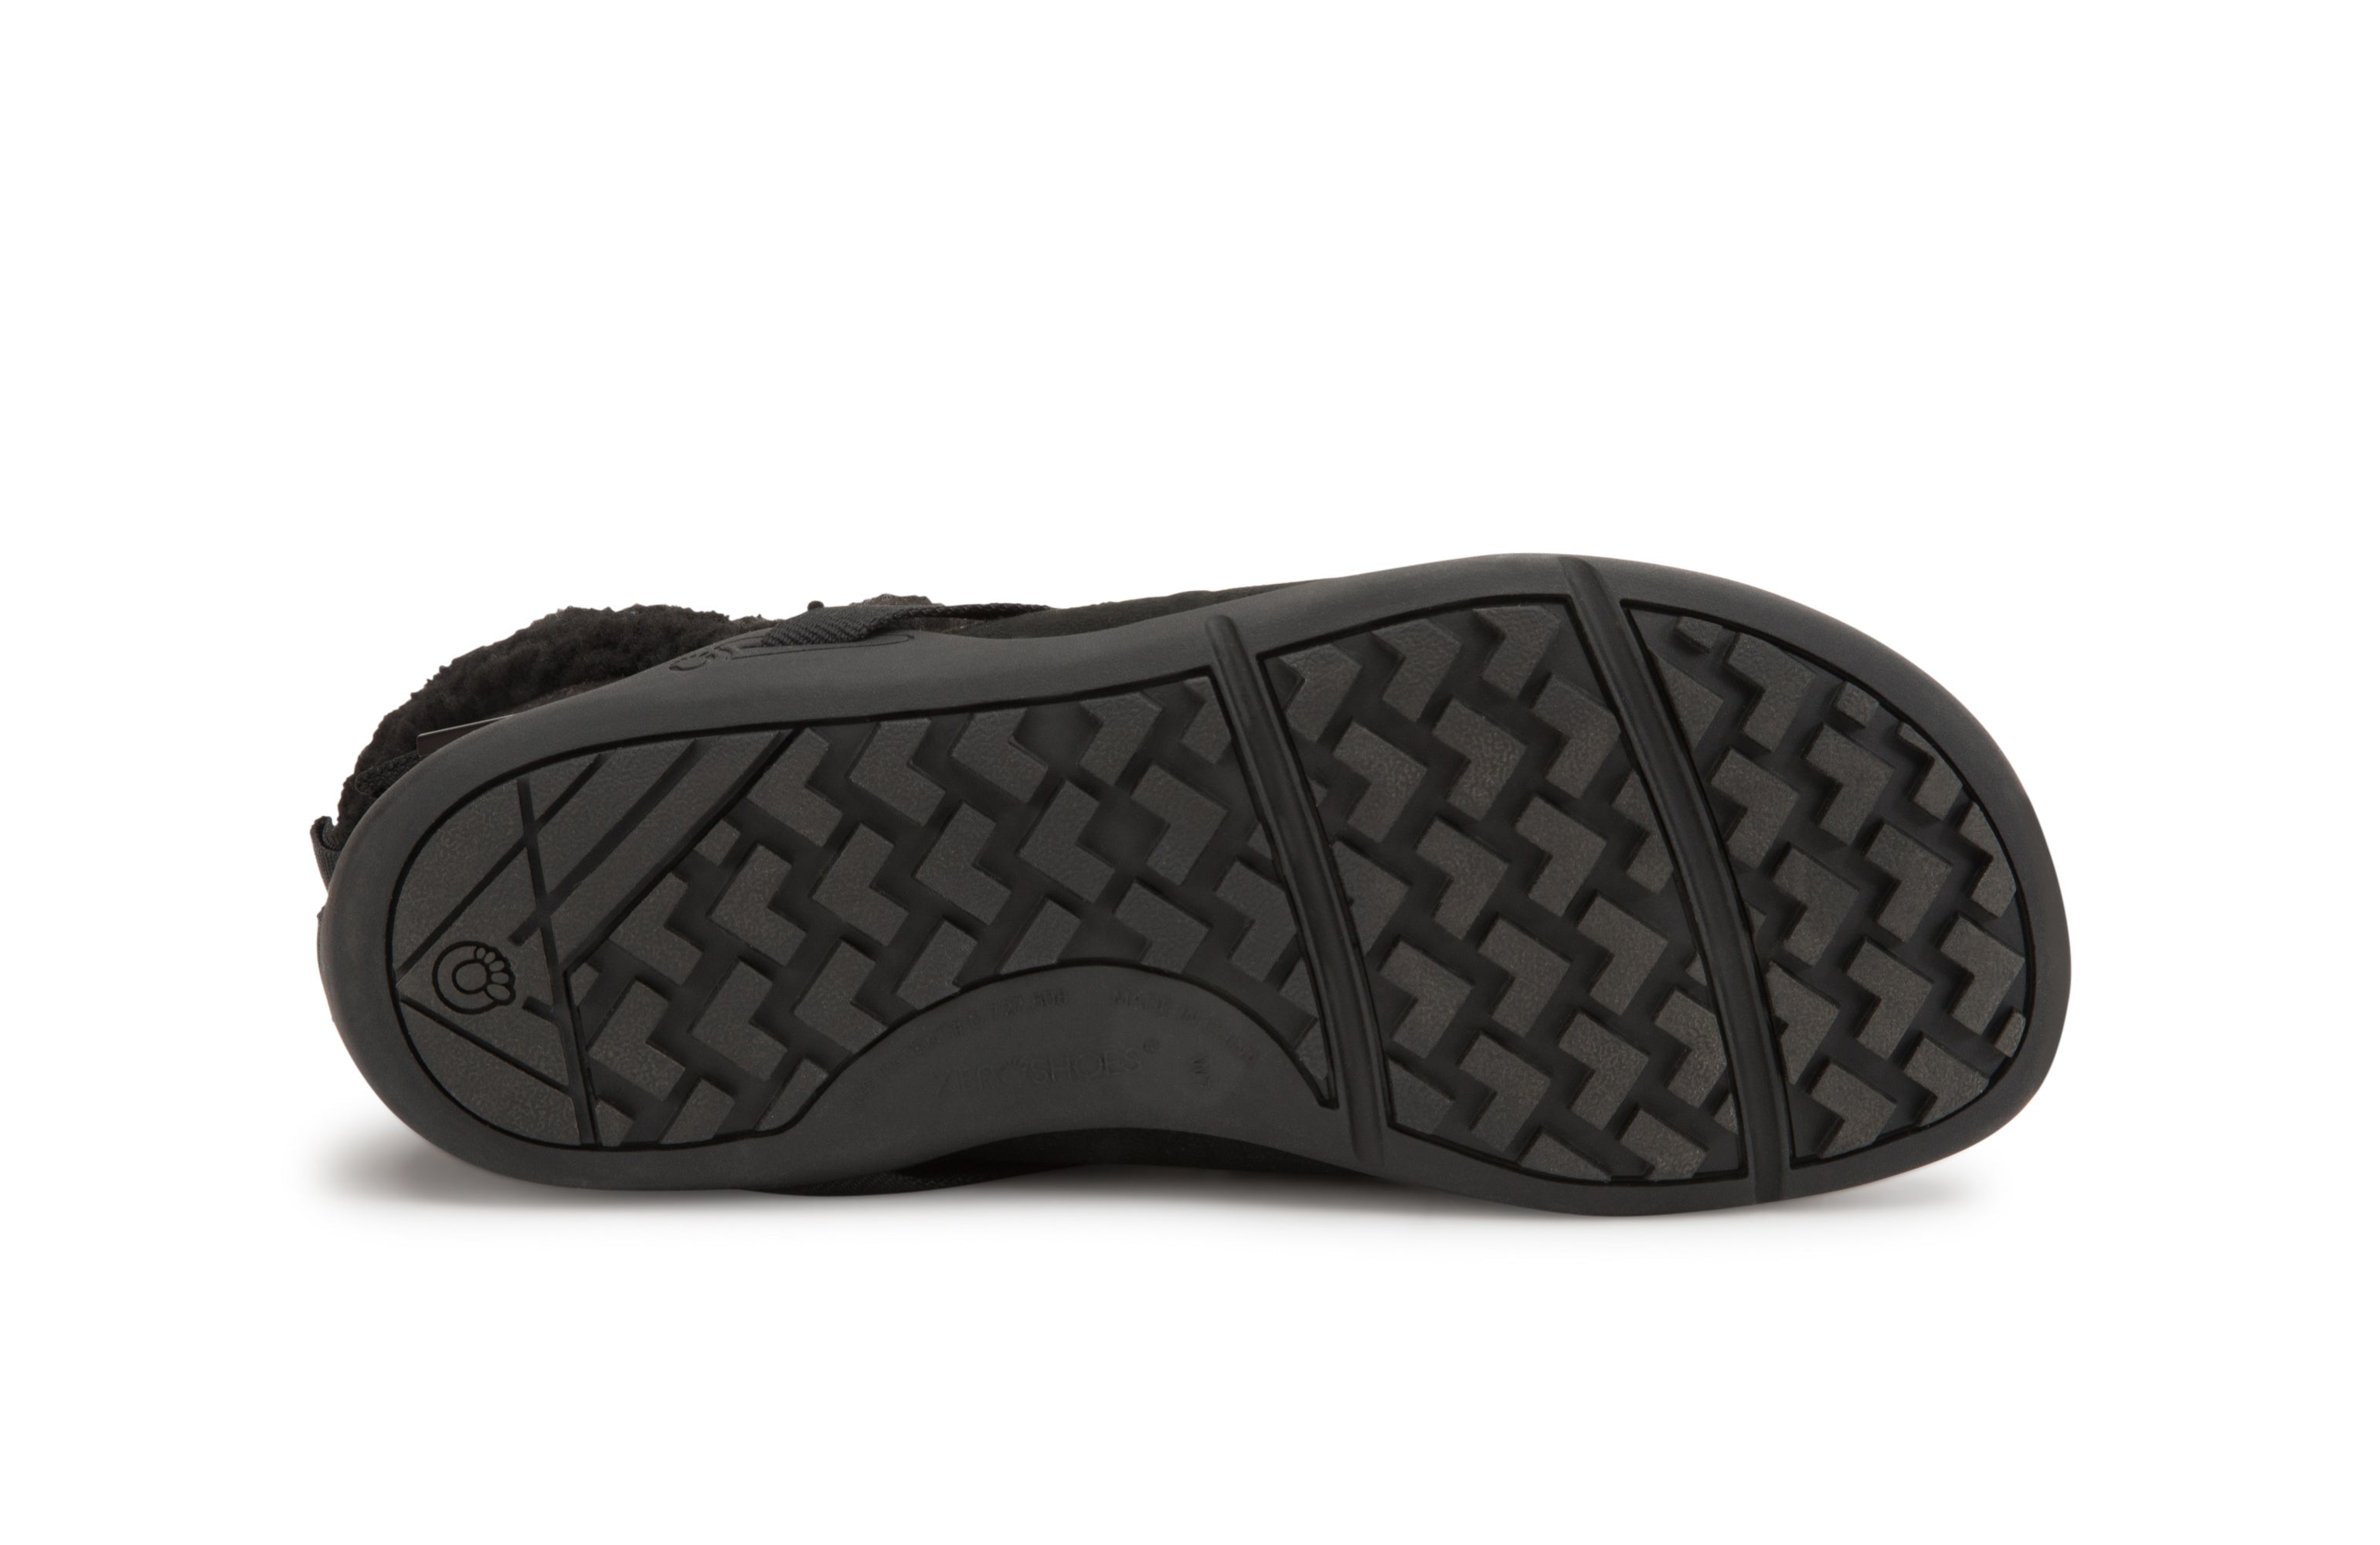 Xero Shoes Ashland barfods kanvas støvler til kvinder i farven black, saal